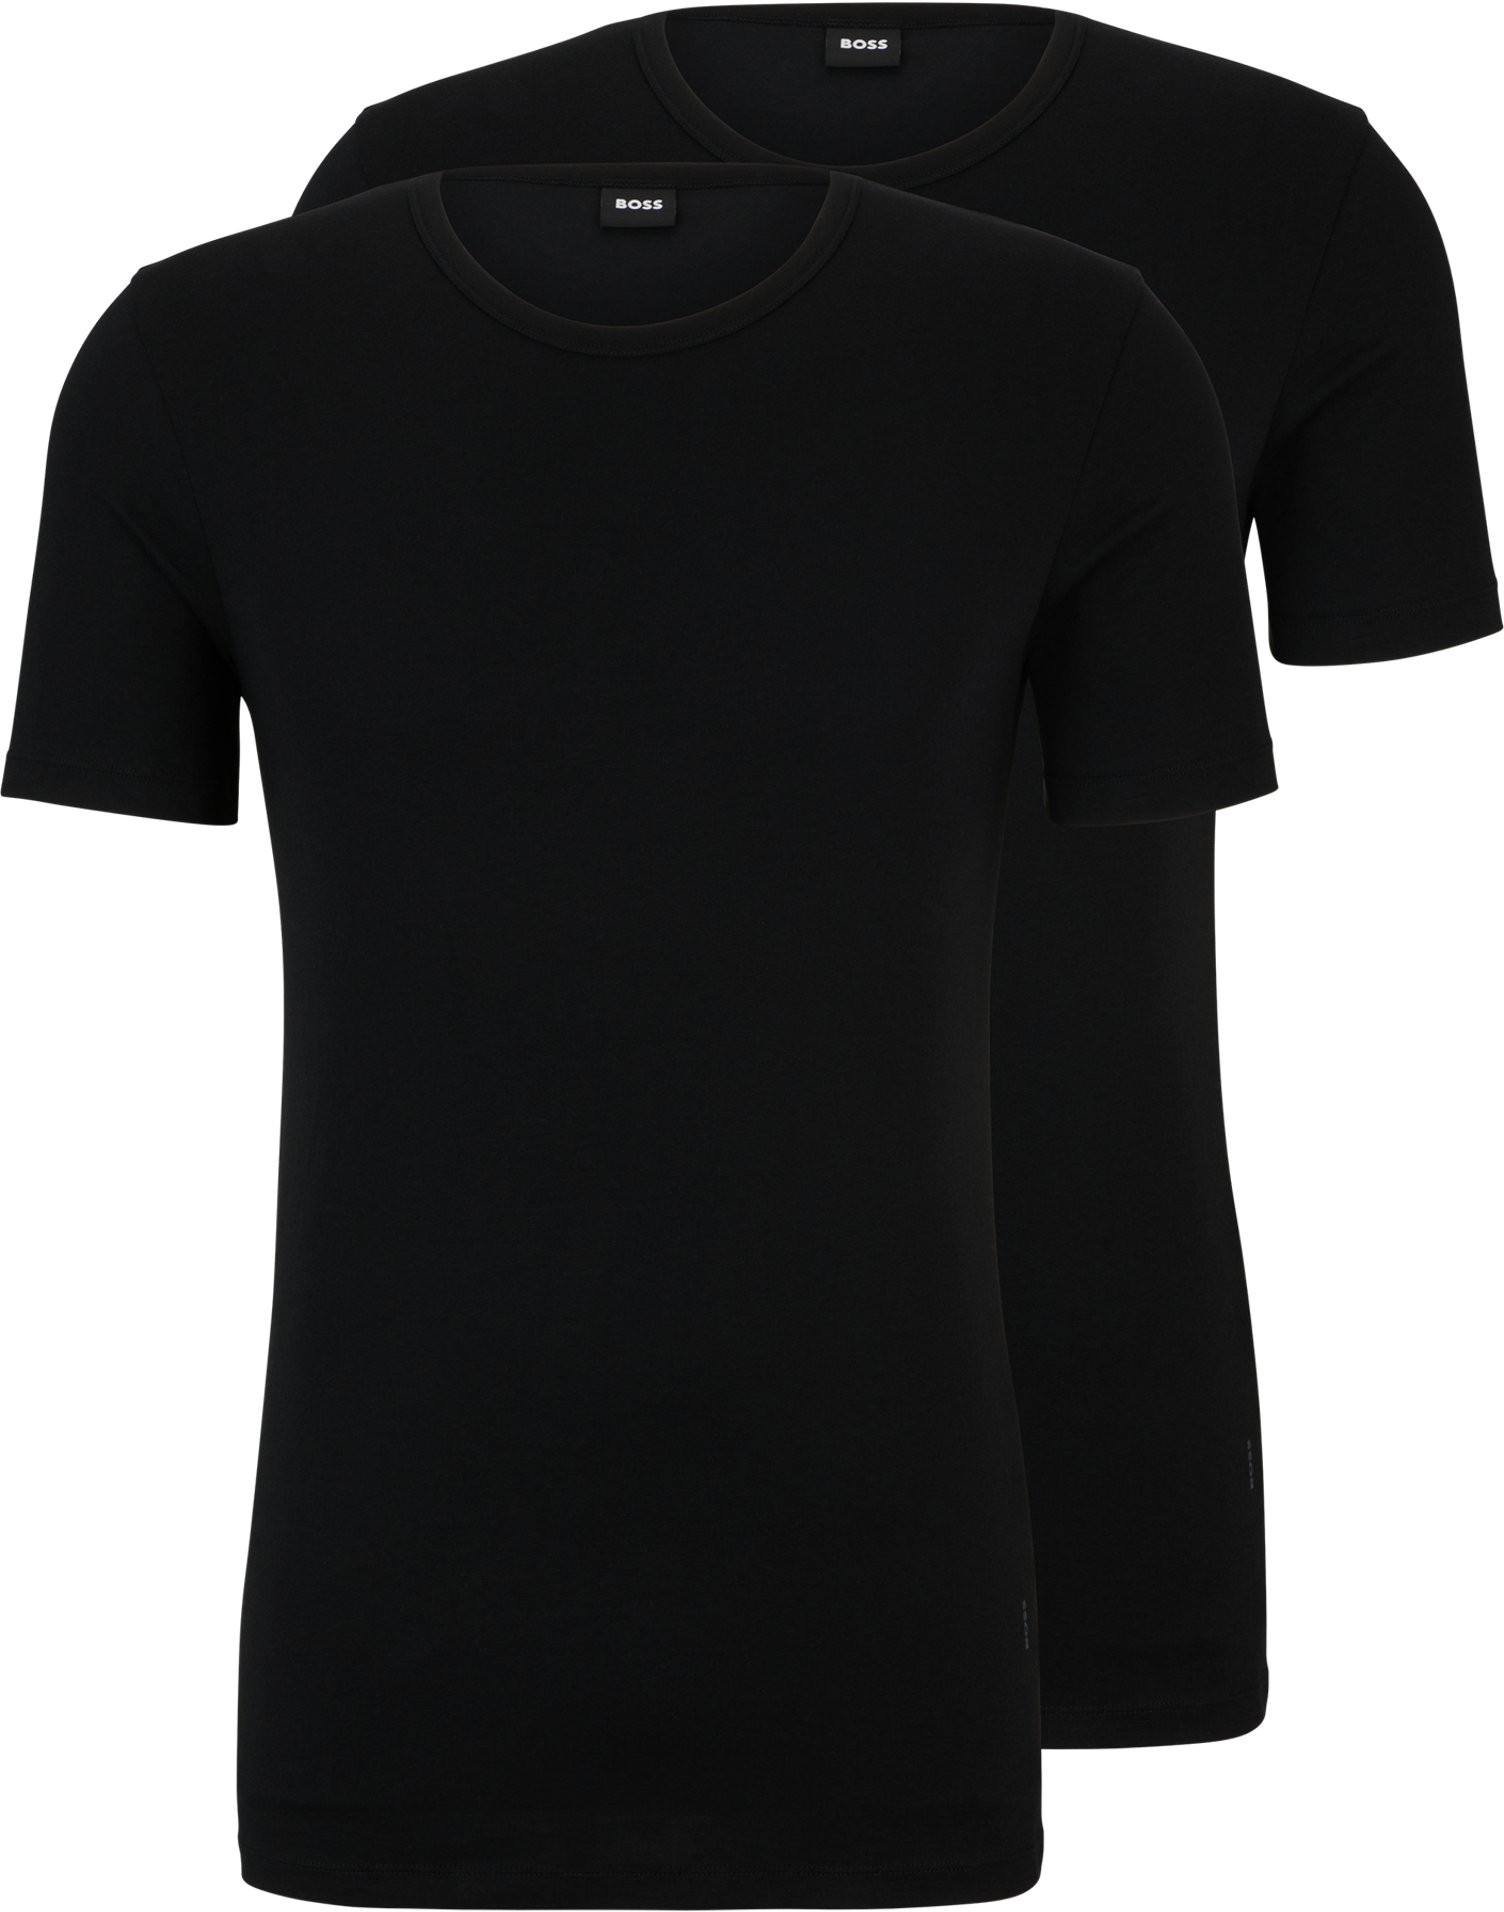 Hugo Boss 2 PACK - pánske tričko BOSS Slim Fit 50475276-001 L